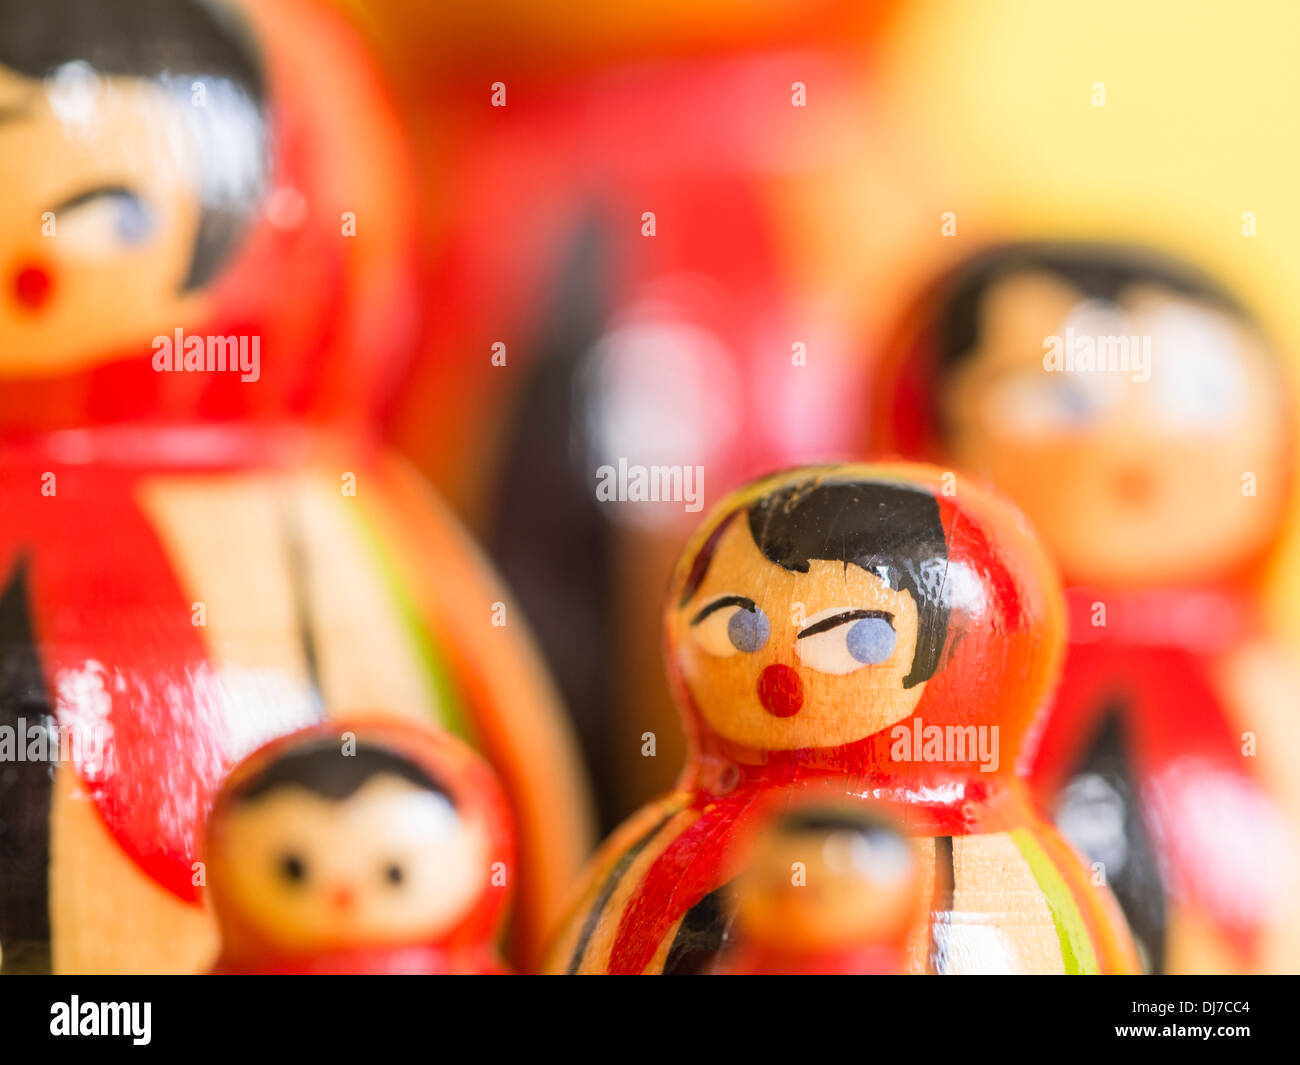 Gruppe von russischen Matroschka Puppen in einer Gruppe mit selektiven Fokus auf eine Puppe, umrahmt von einem hellgelben Hintergrund. Stockfoto